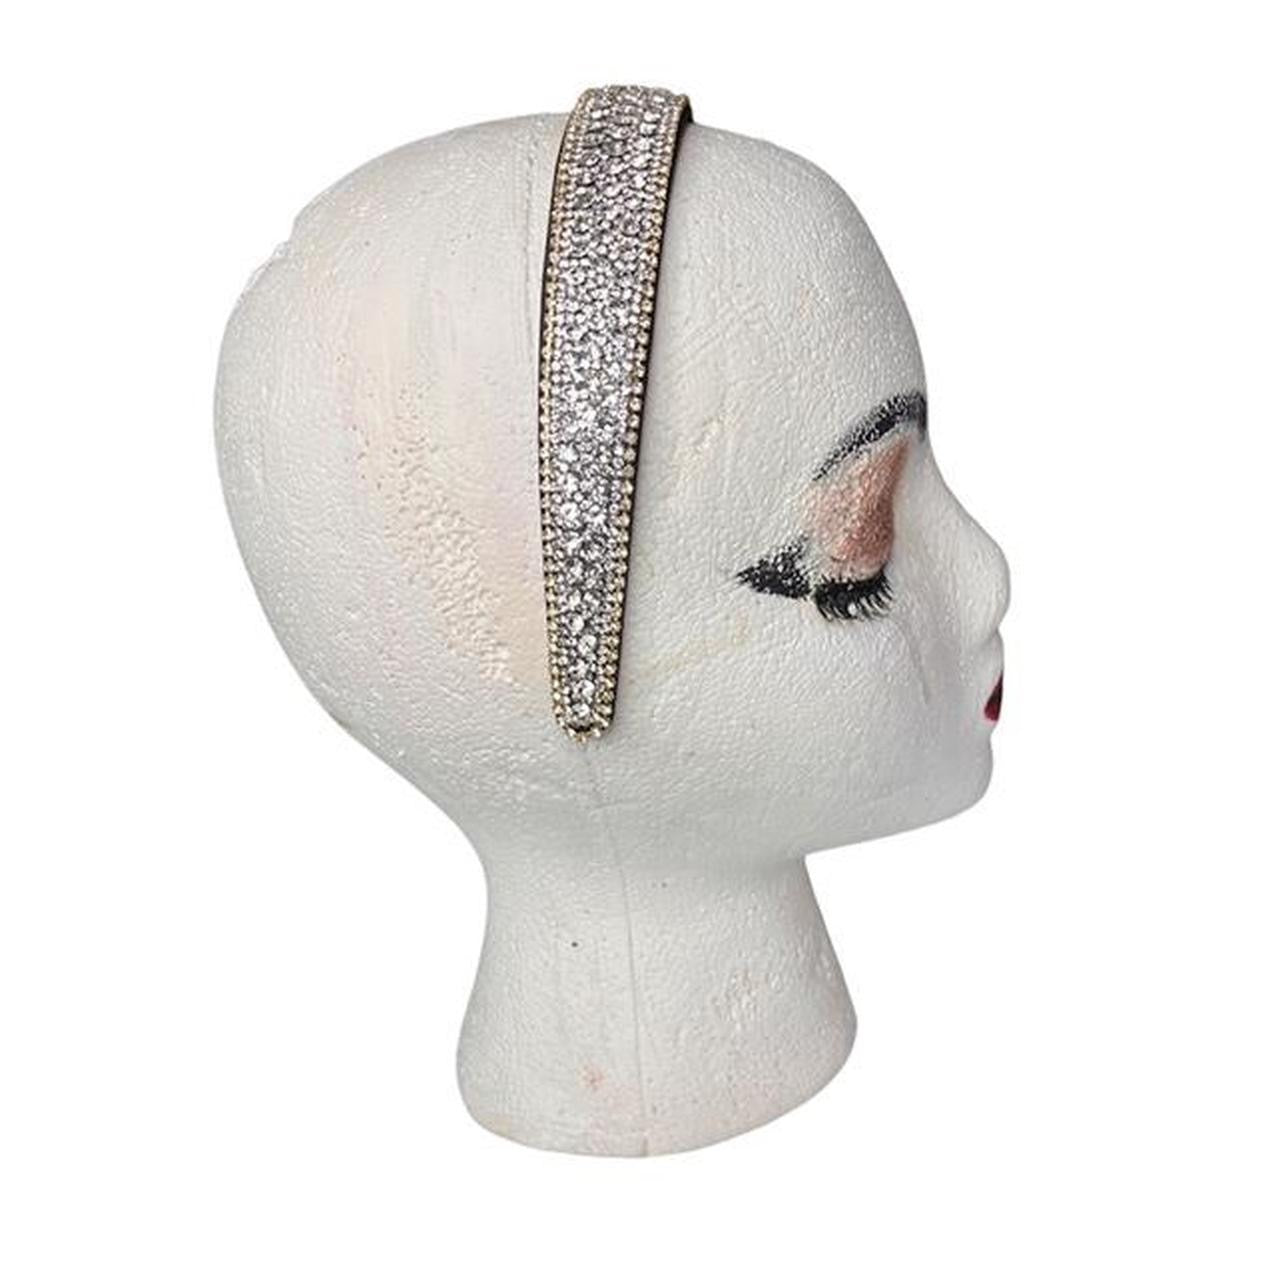 Rhinestone Ribbons embellished headband